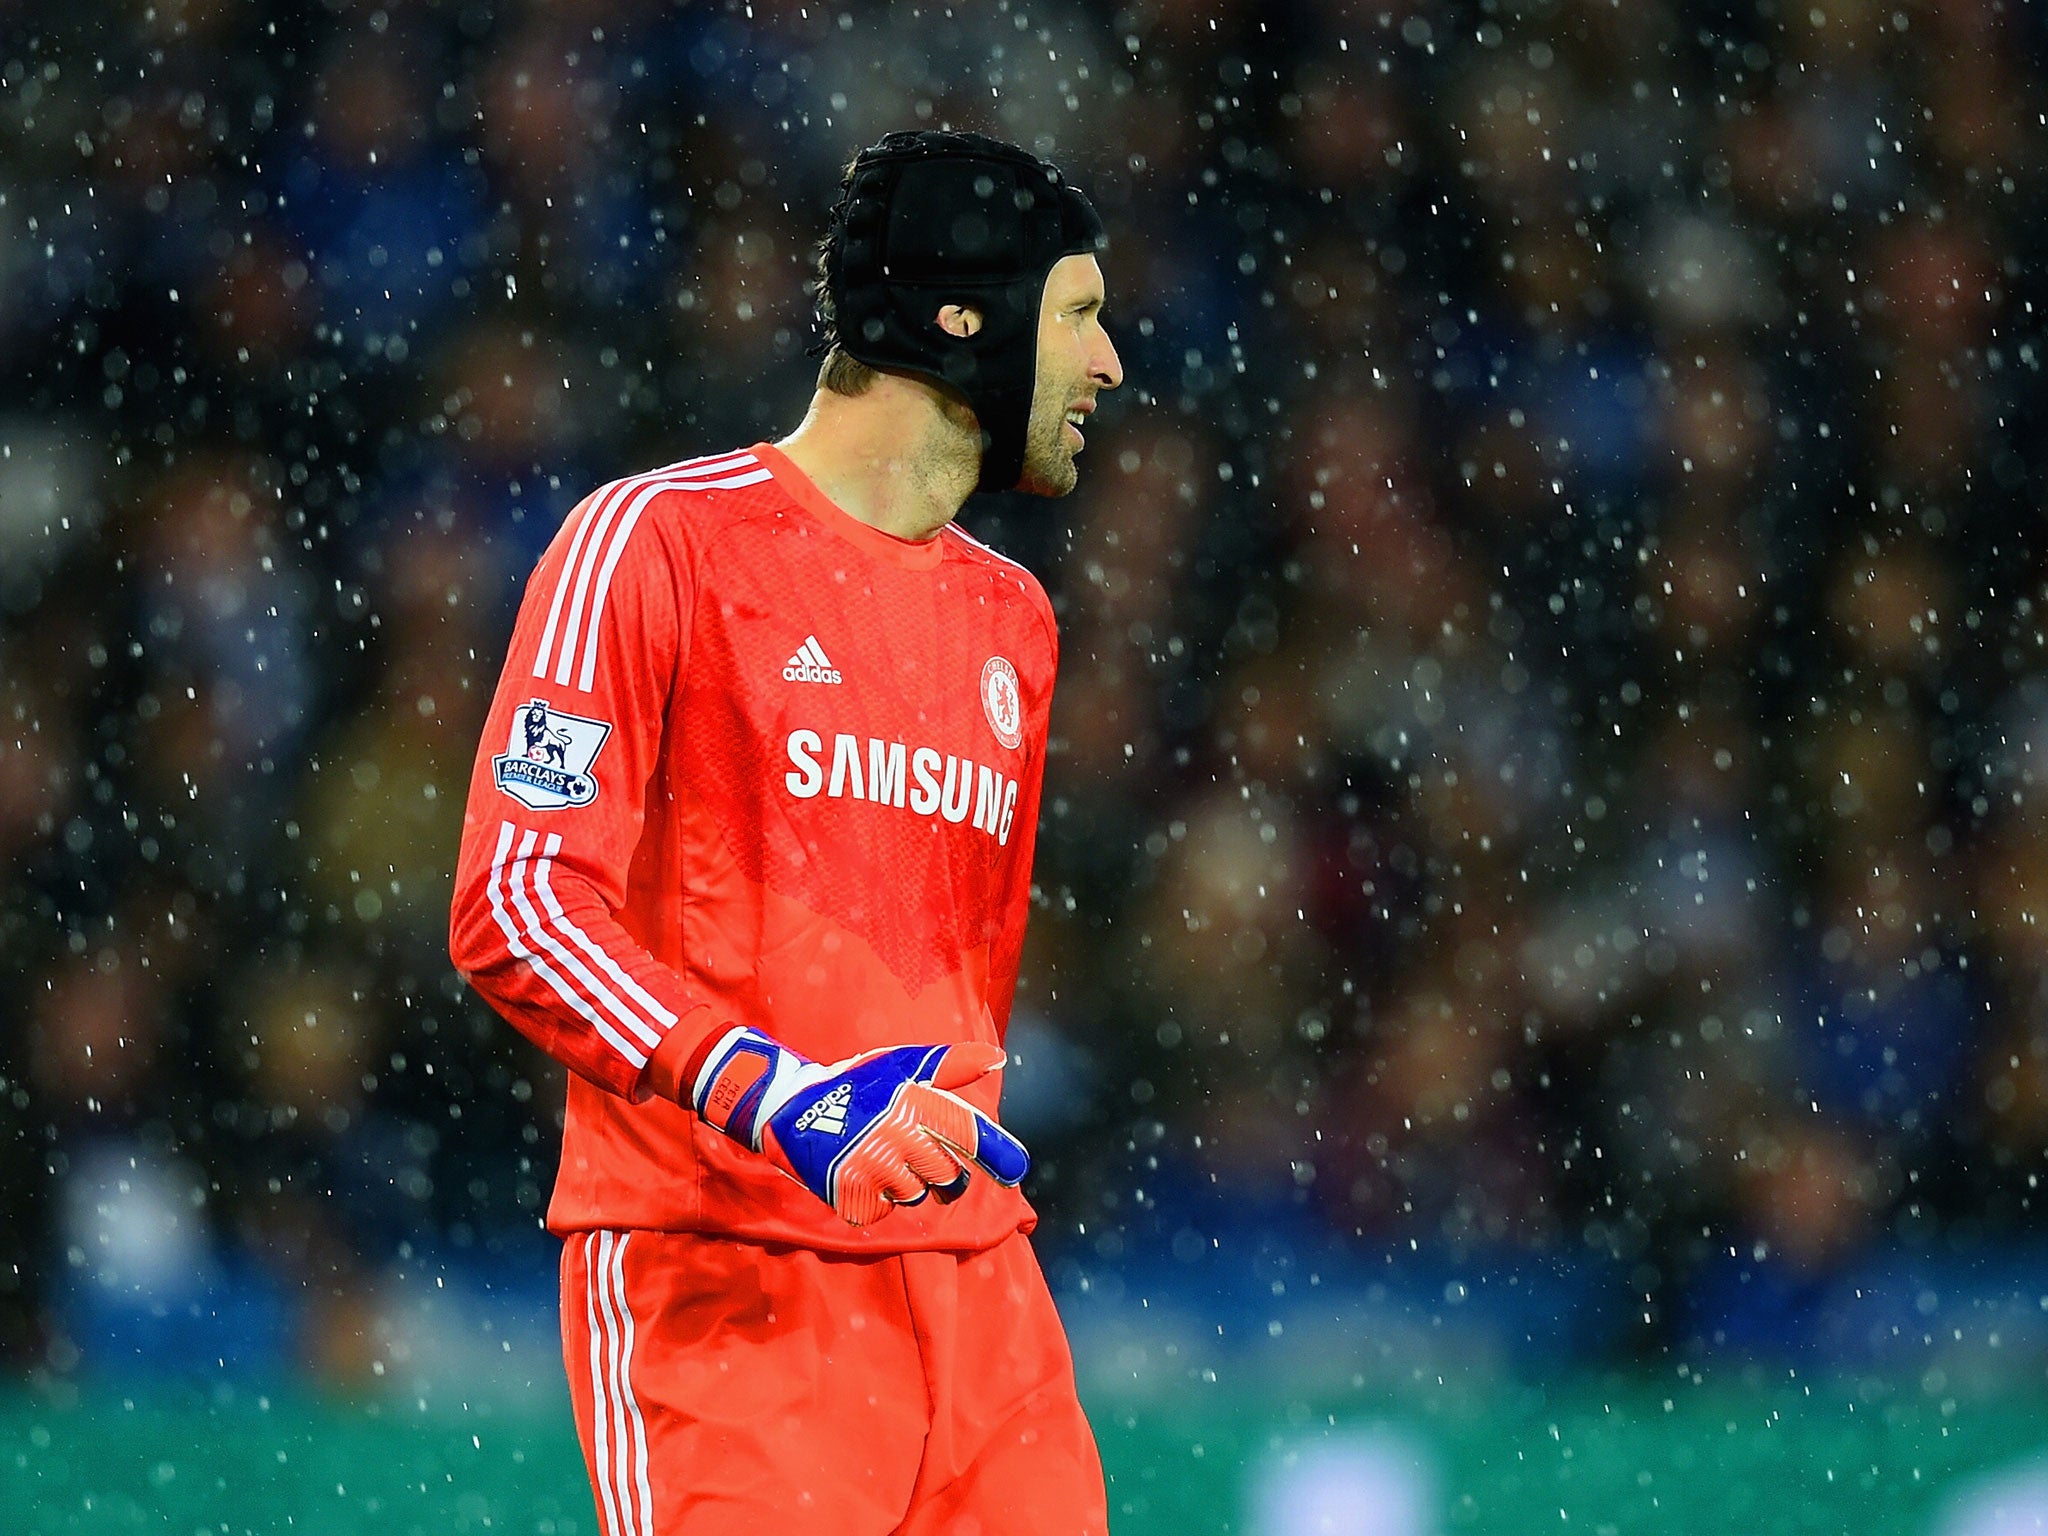 Chelsea goalkeeper Petr Cech